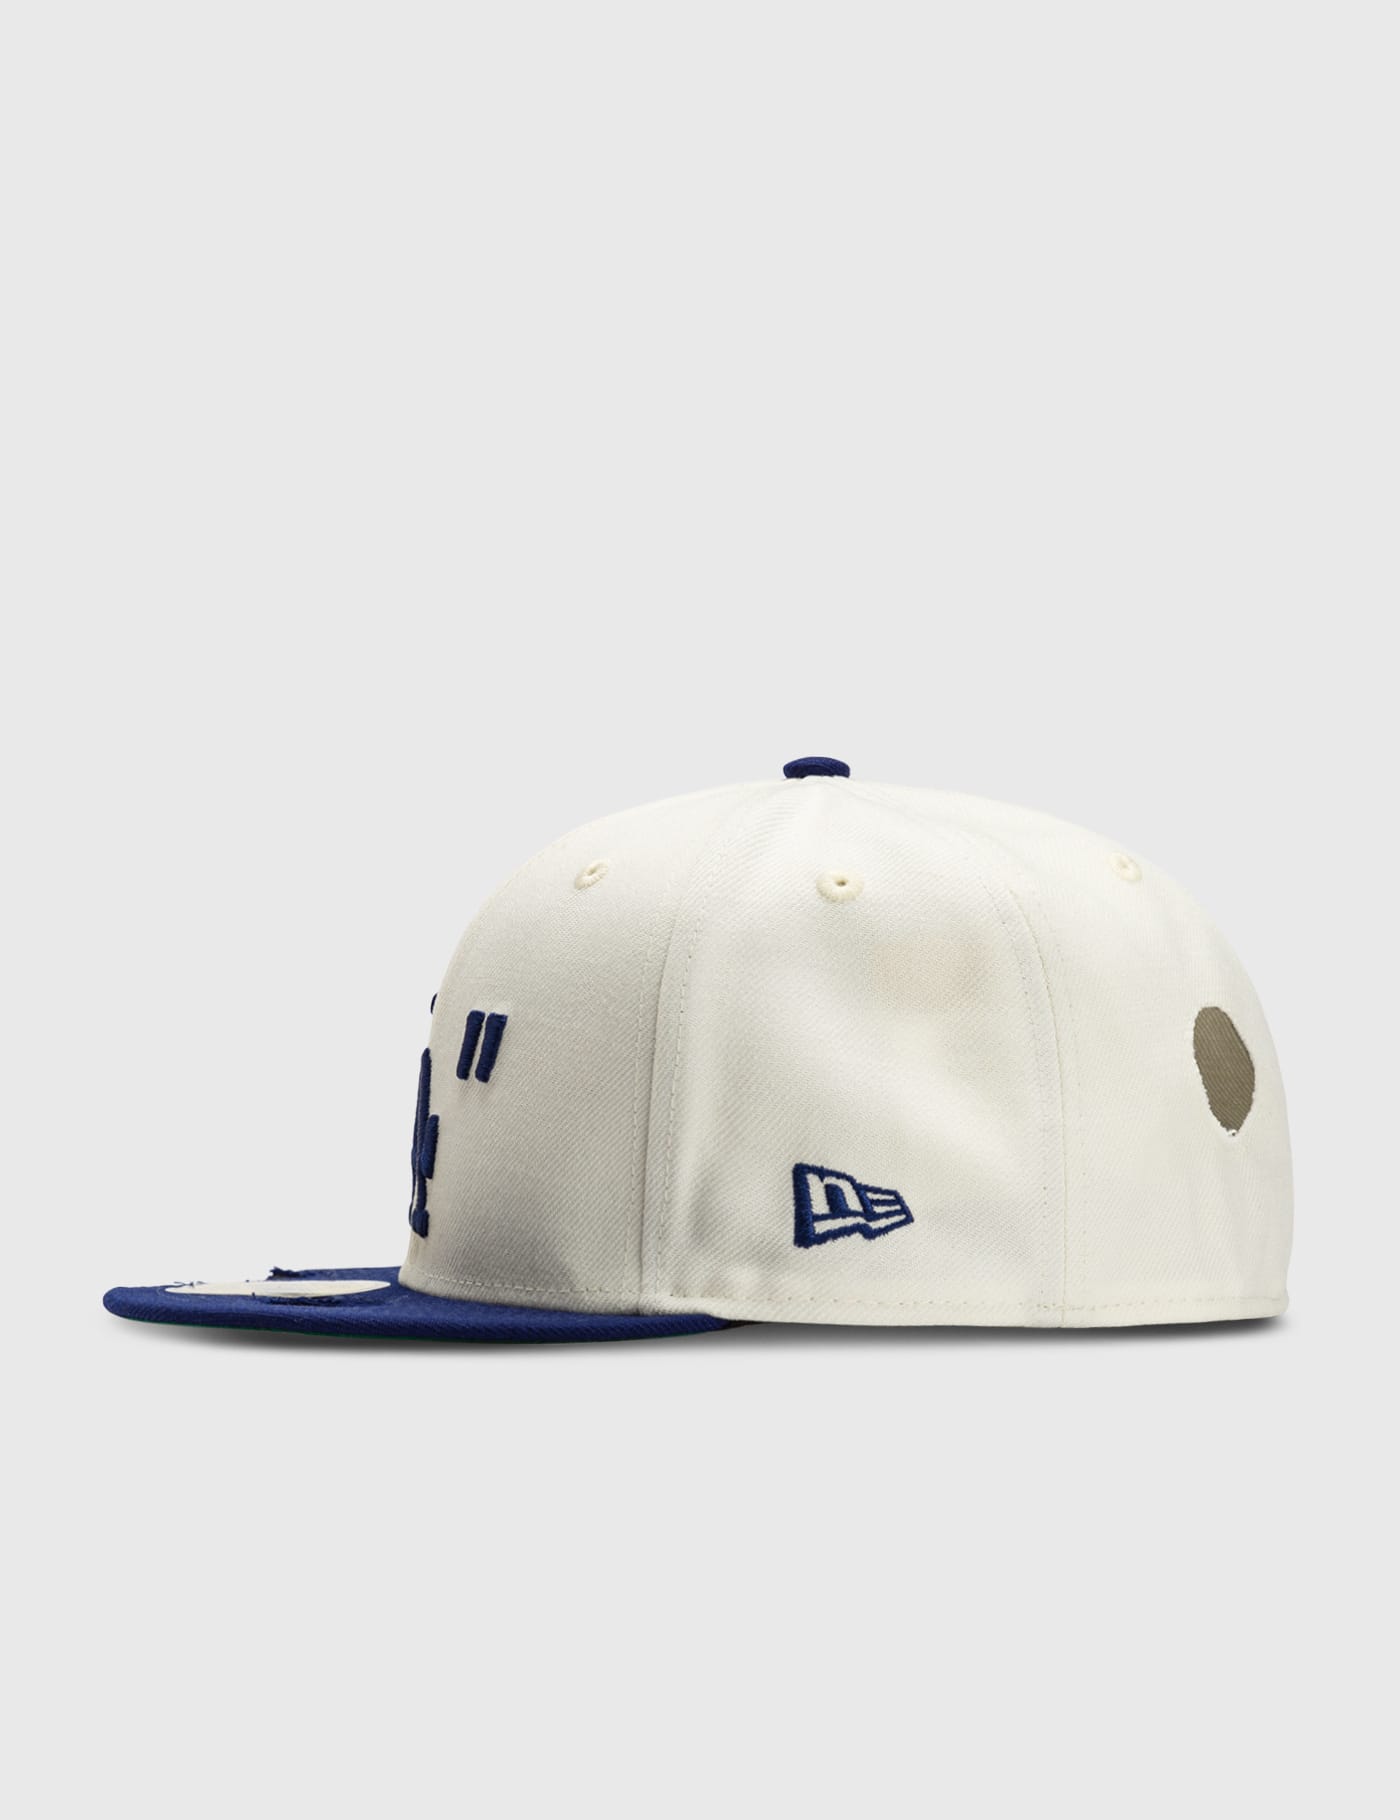 Off-White™ - Off-White x New Era MLB LA Dodgers 59FIFTY Cap | HBX